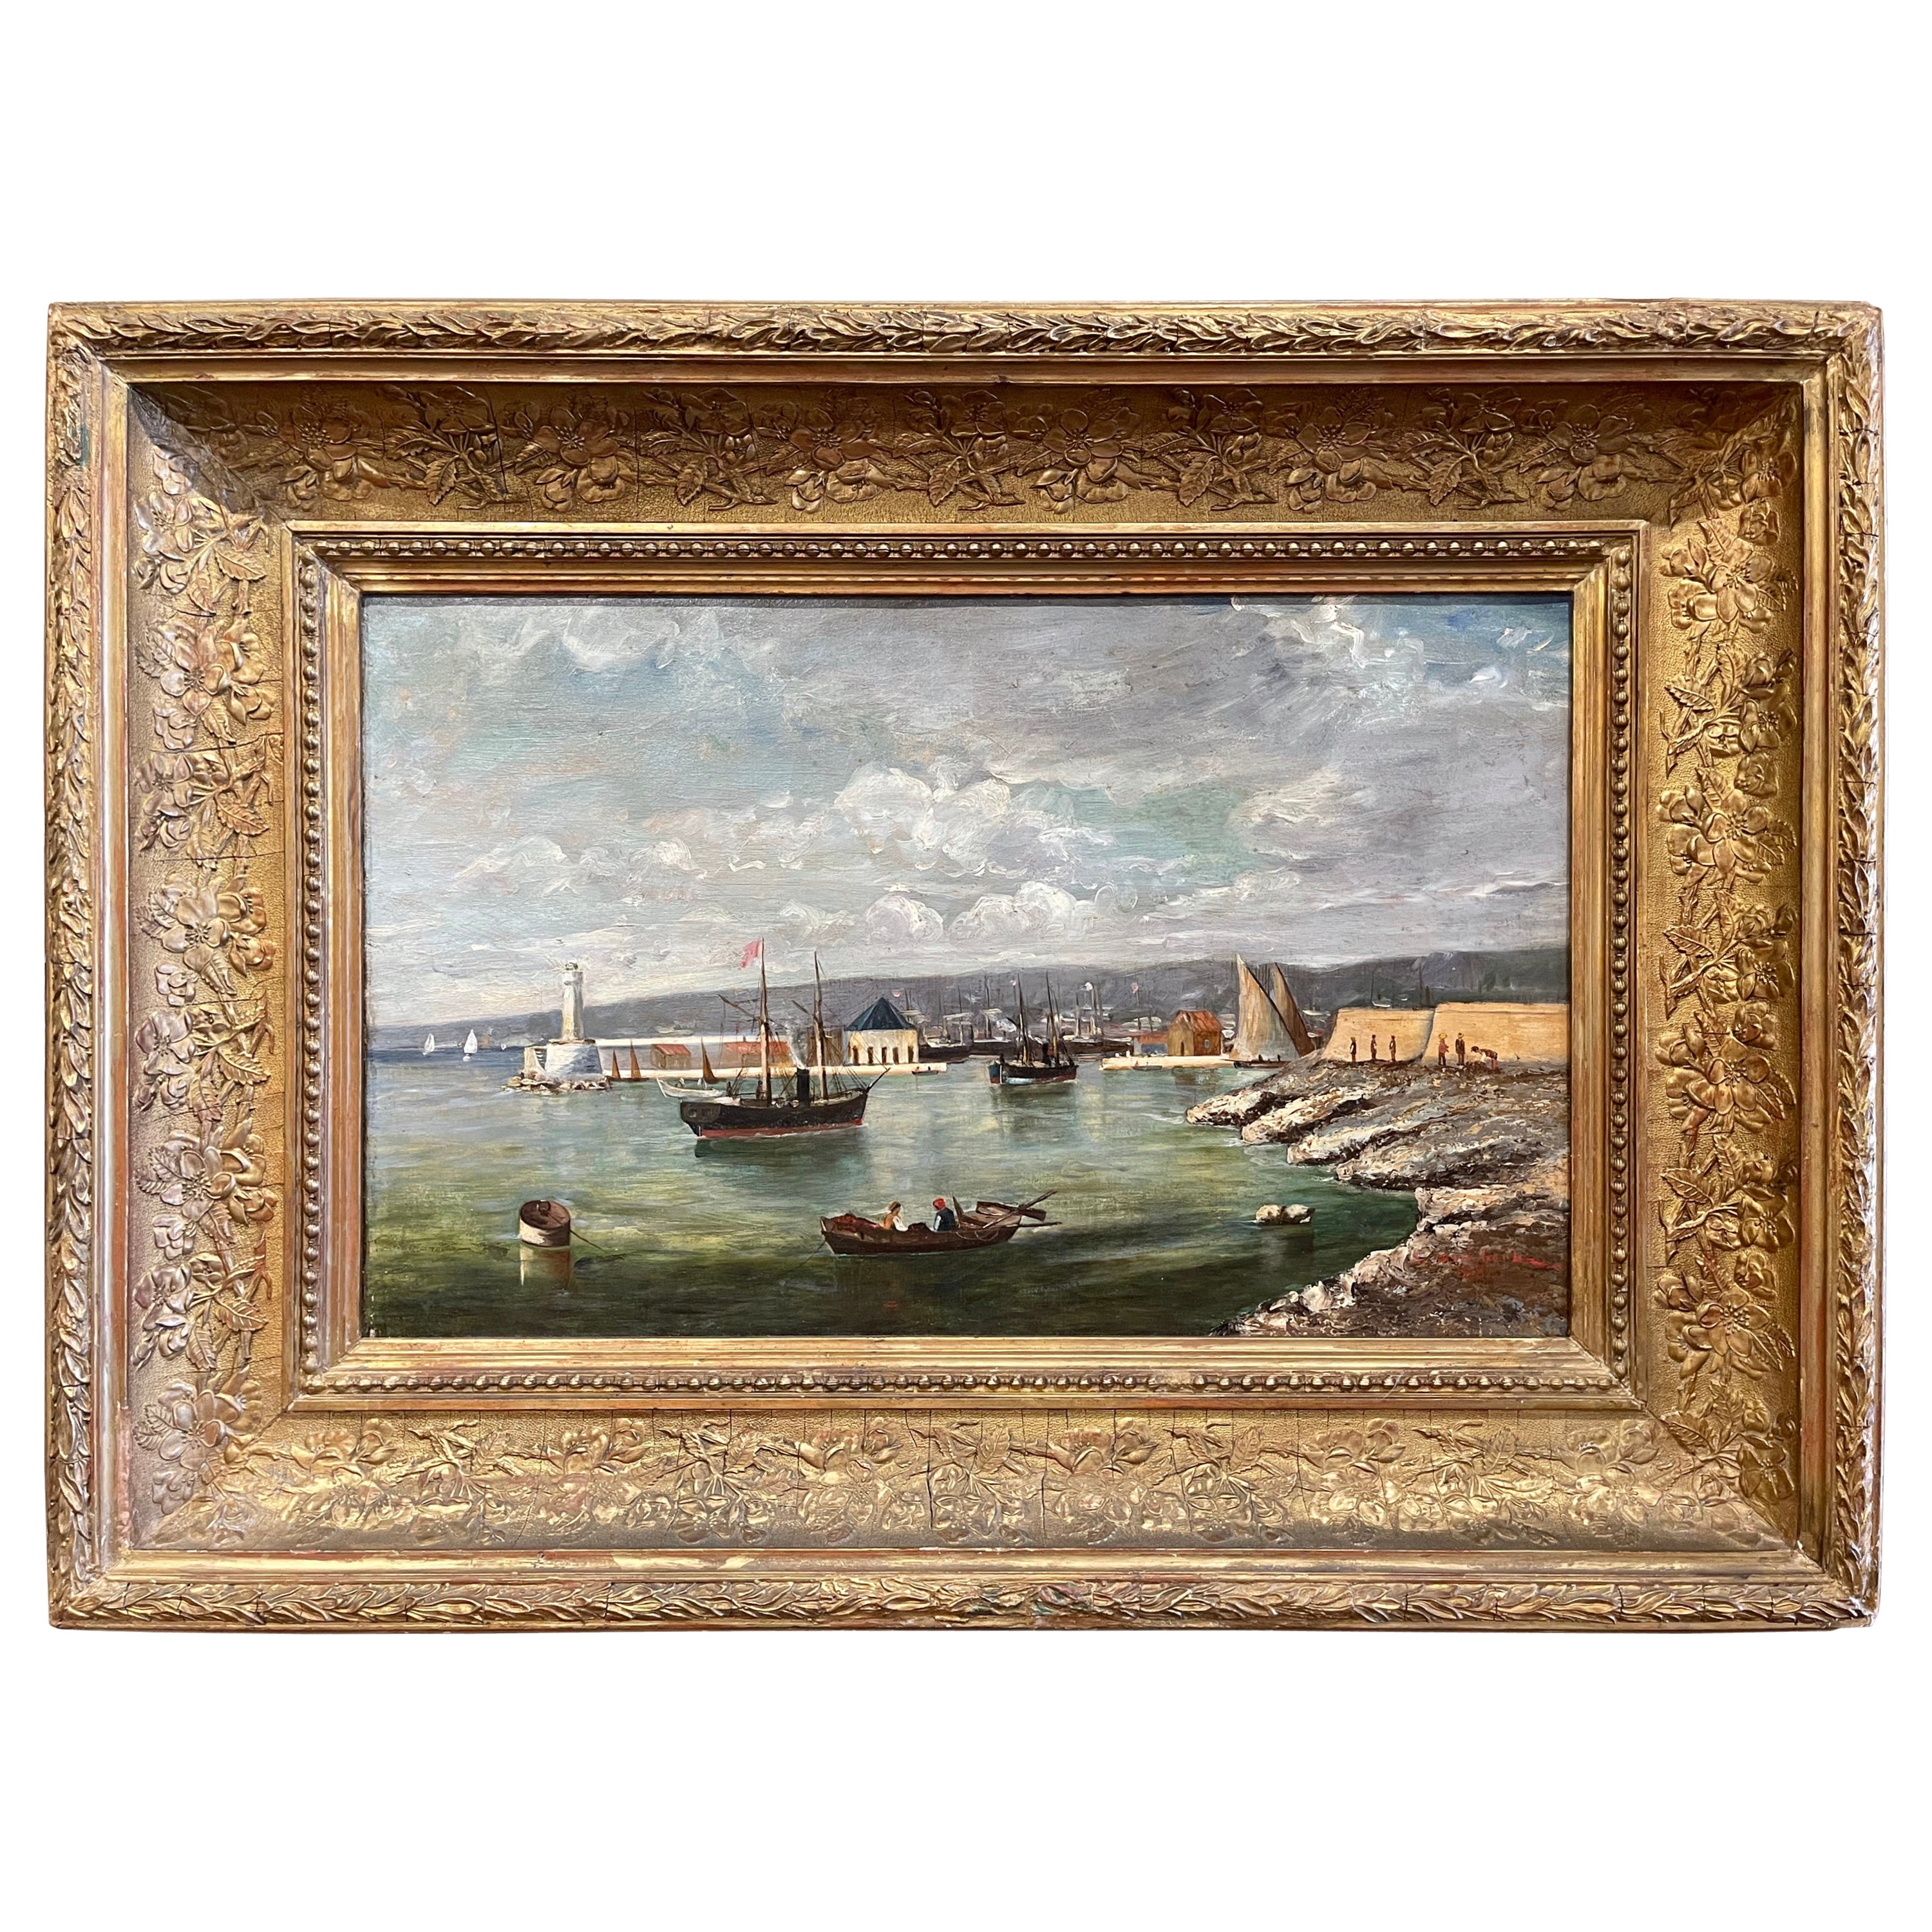  Französisches Gemälde, Öl auf Leinwand, Marine, signiert S. Audibert, 19. Jahrhundert, datiert 1885